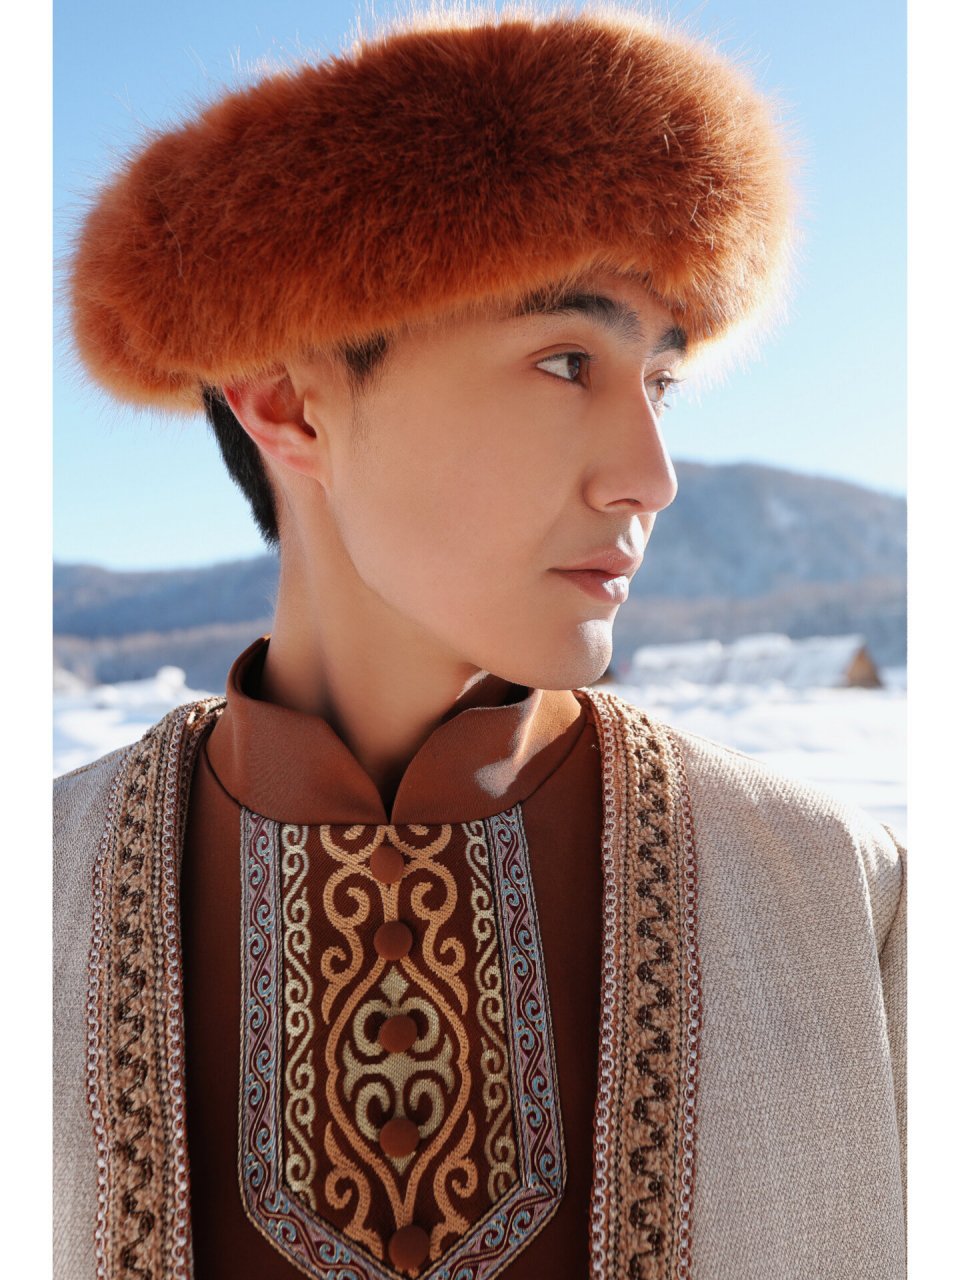 哈萨克族男生服装图片图片